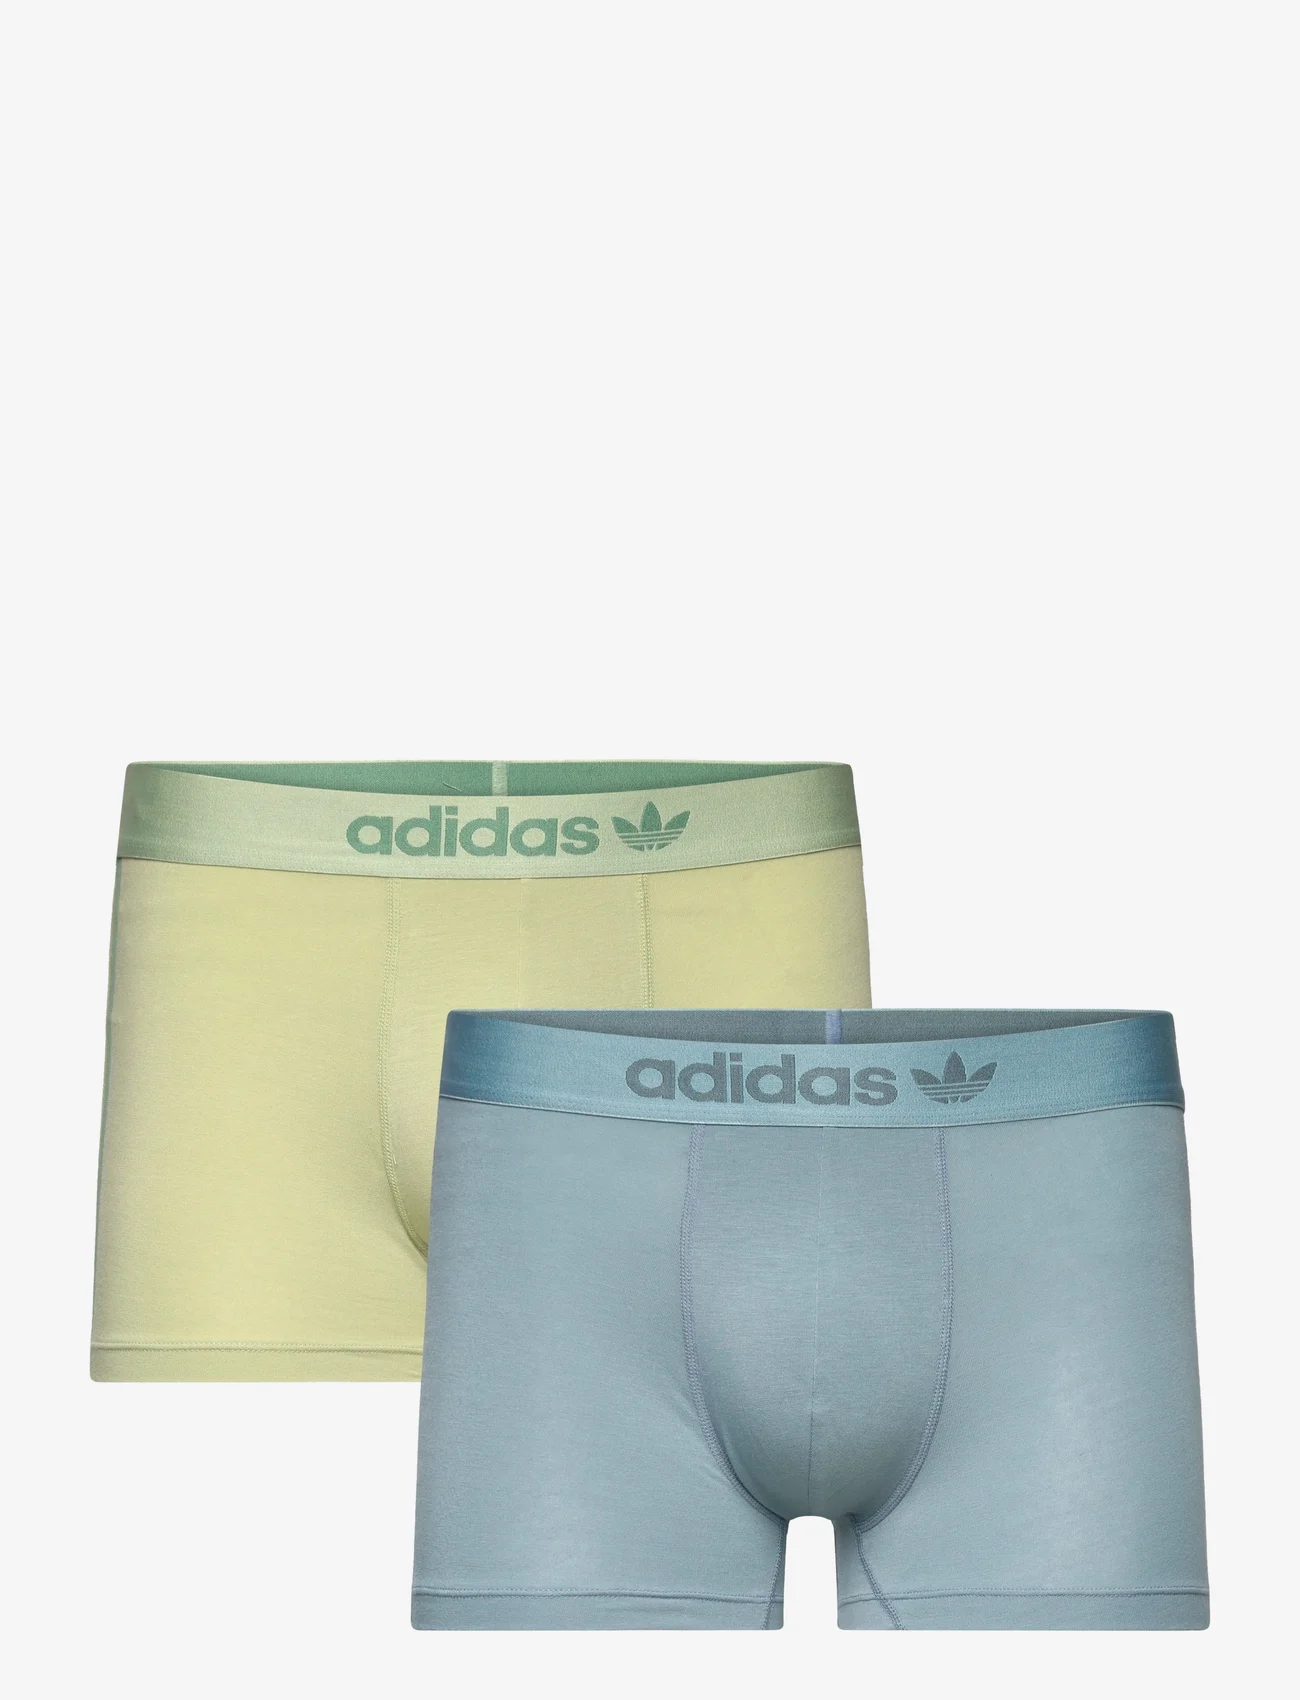 adidas Originals Underwear - Trunks - die niedrigsten preise - assorted 4 - 0